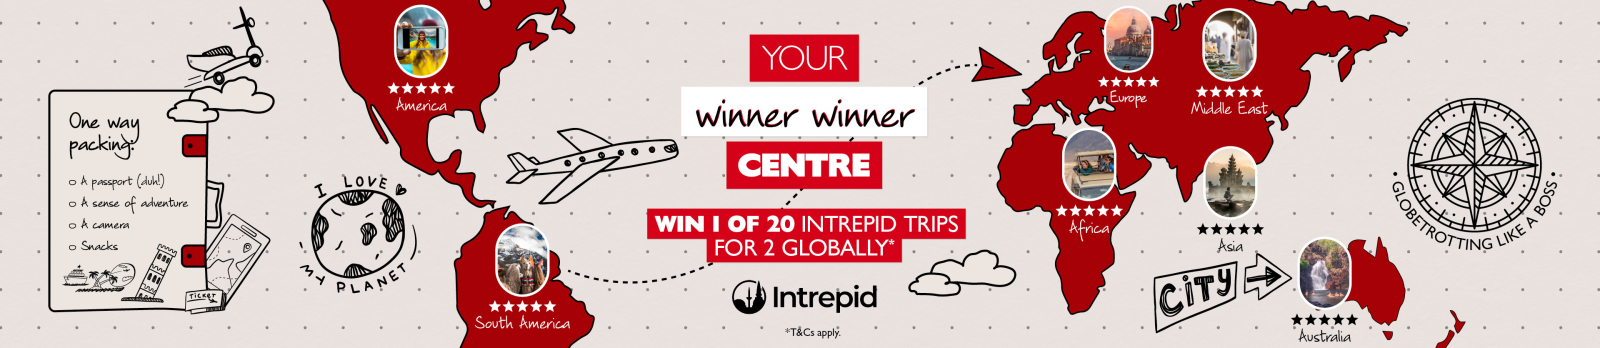 Your winner winner centre - win 1 of 20 Intrepid tours for 2 globally* Intrepid *T&Cs Apply